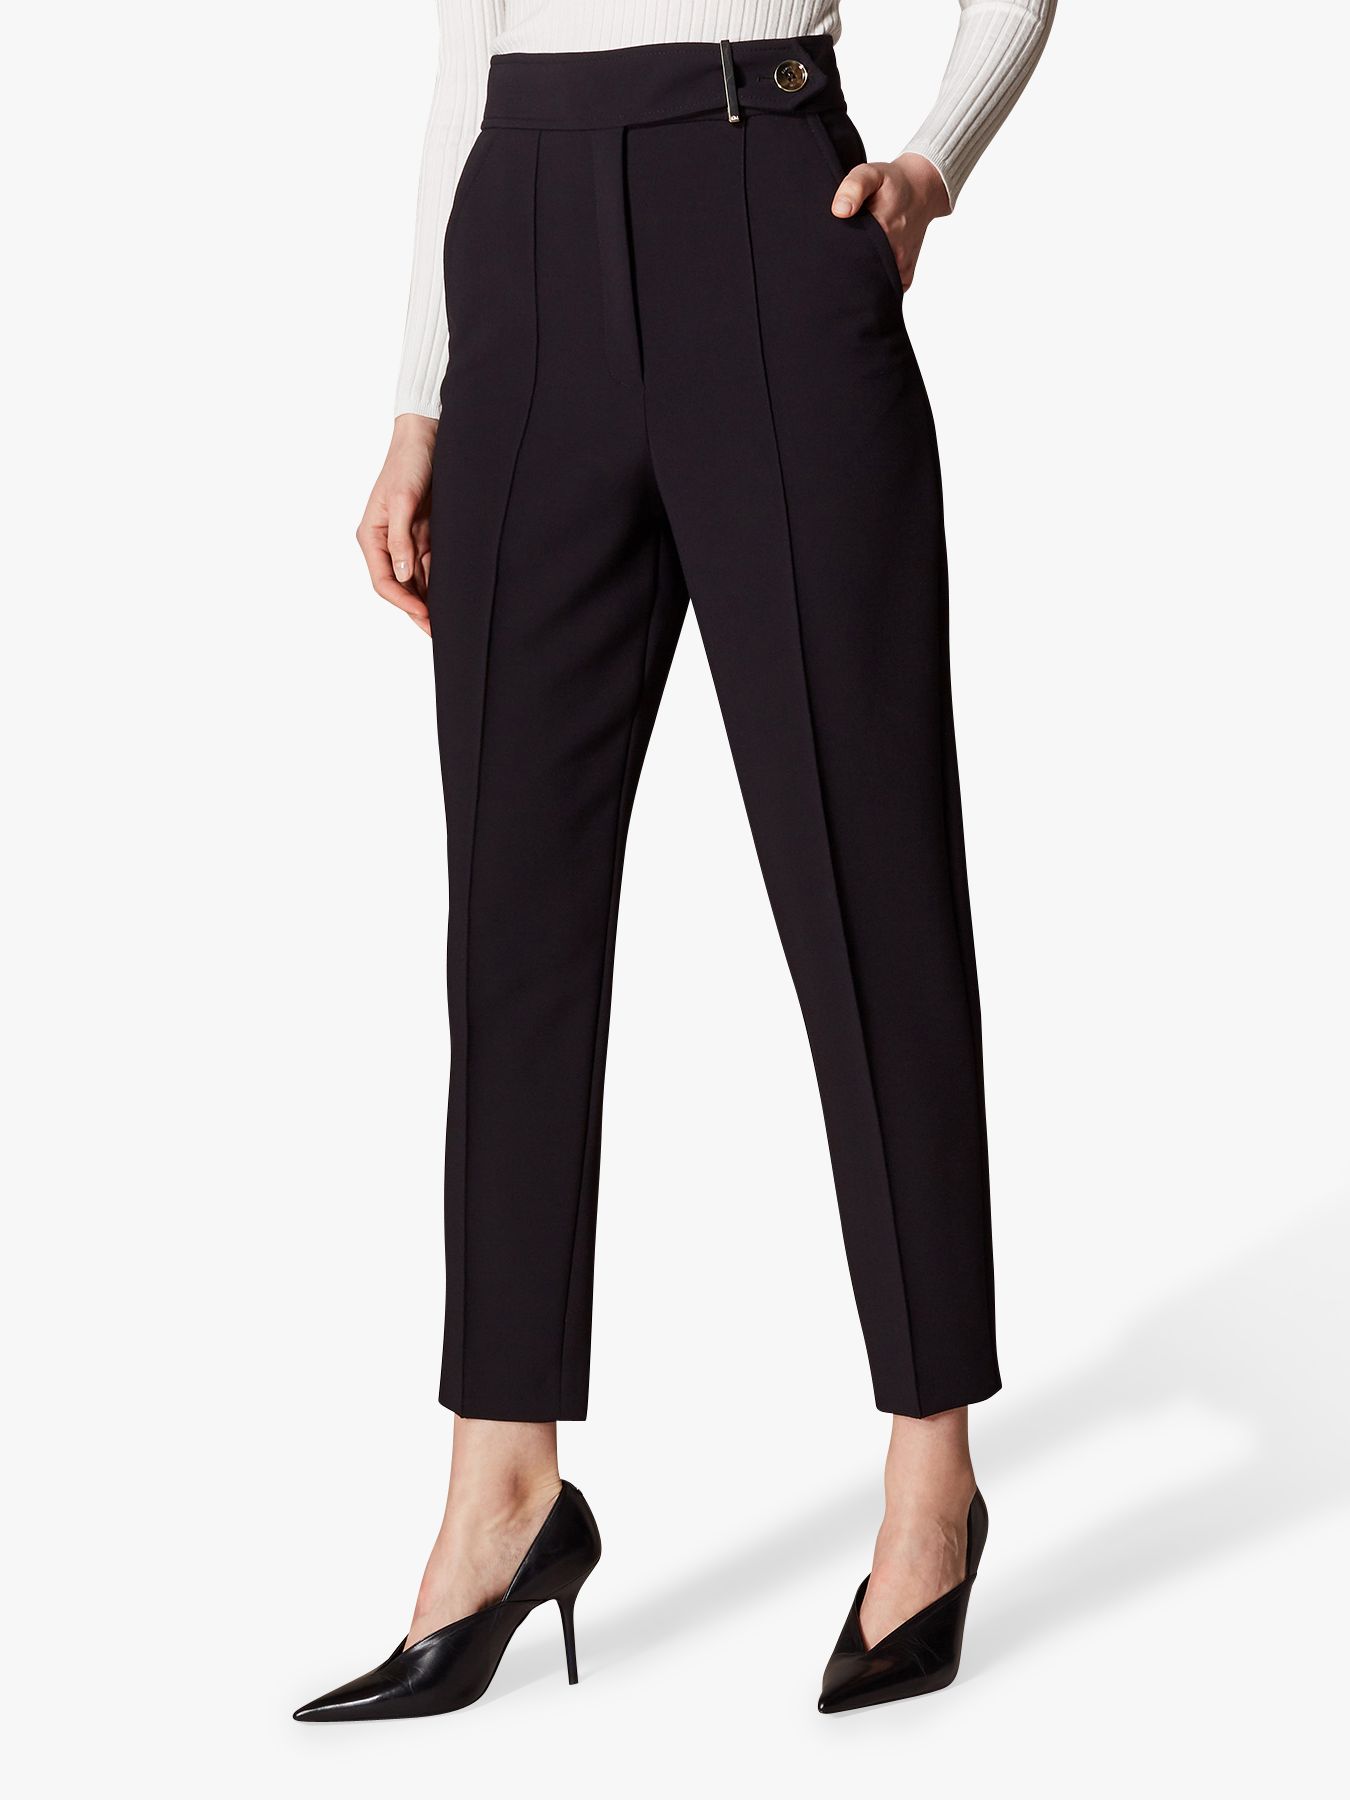 Karen Millen High Waist Tailored Trousers, Black at John Lewis & Partners